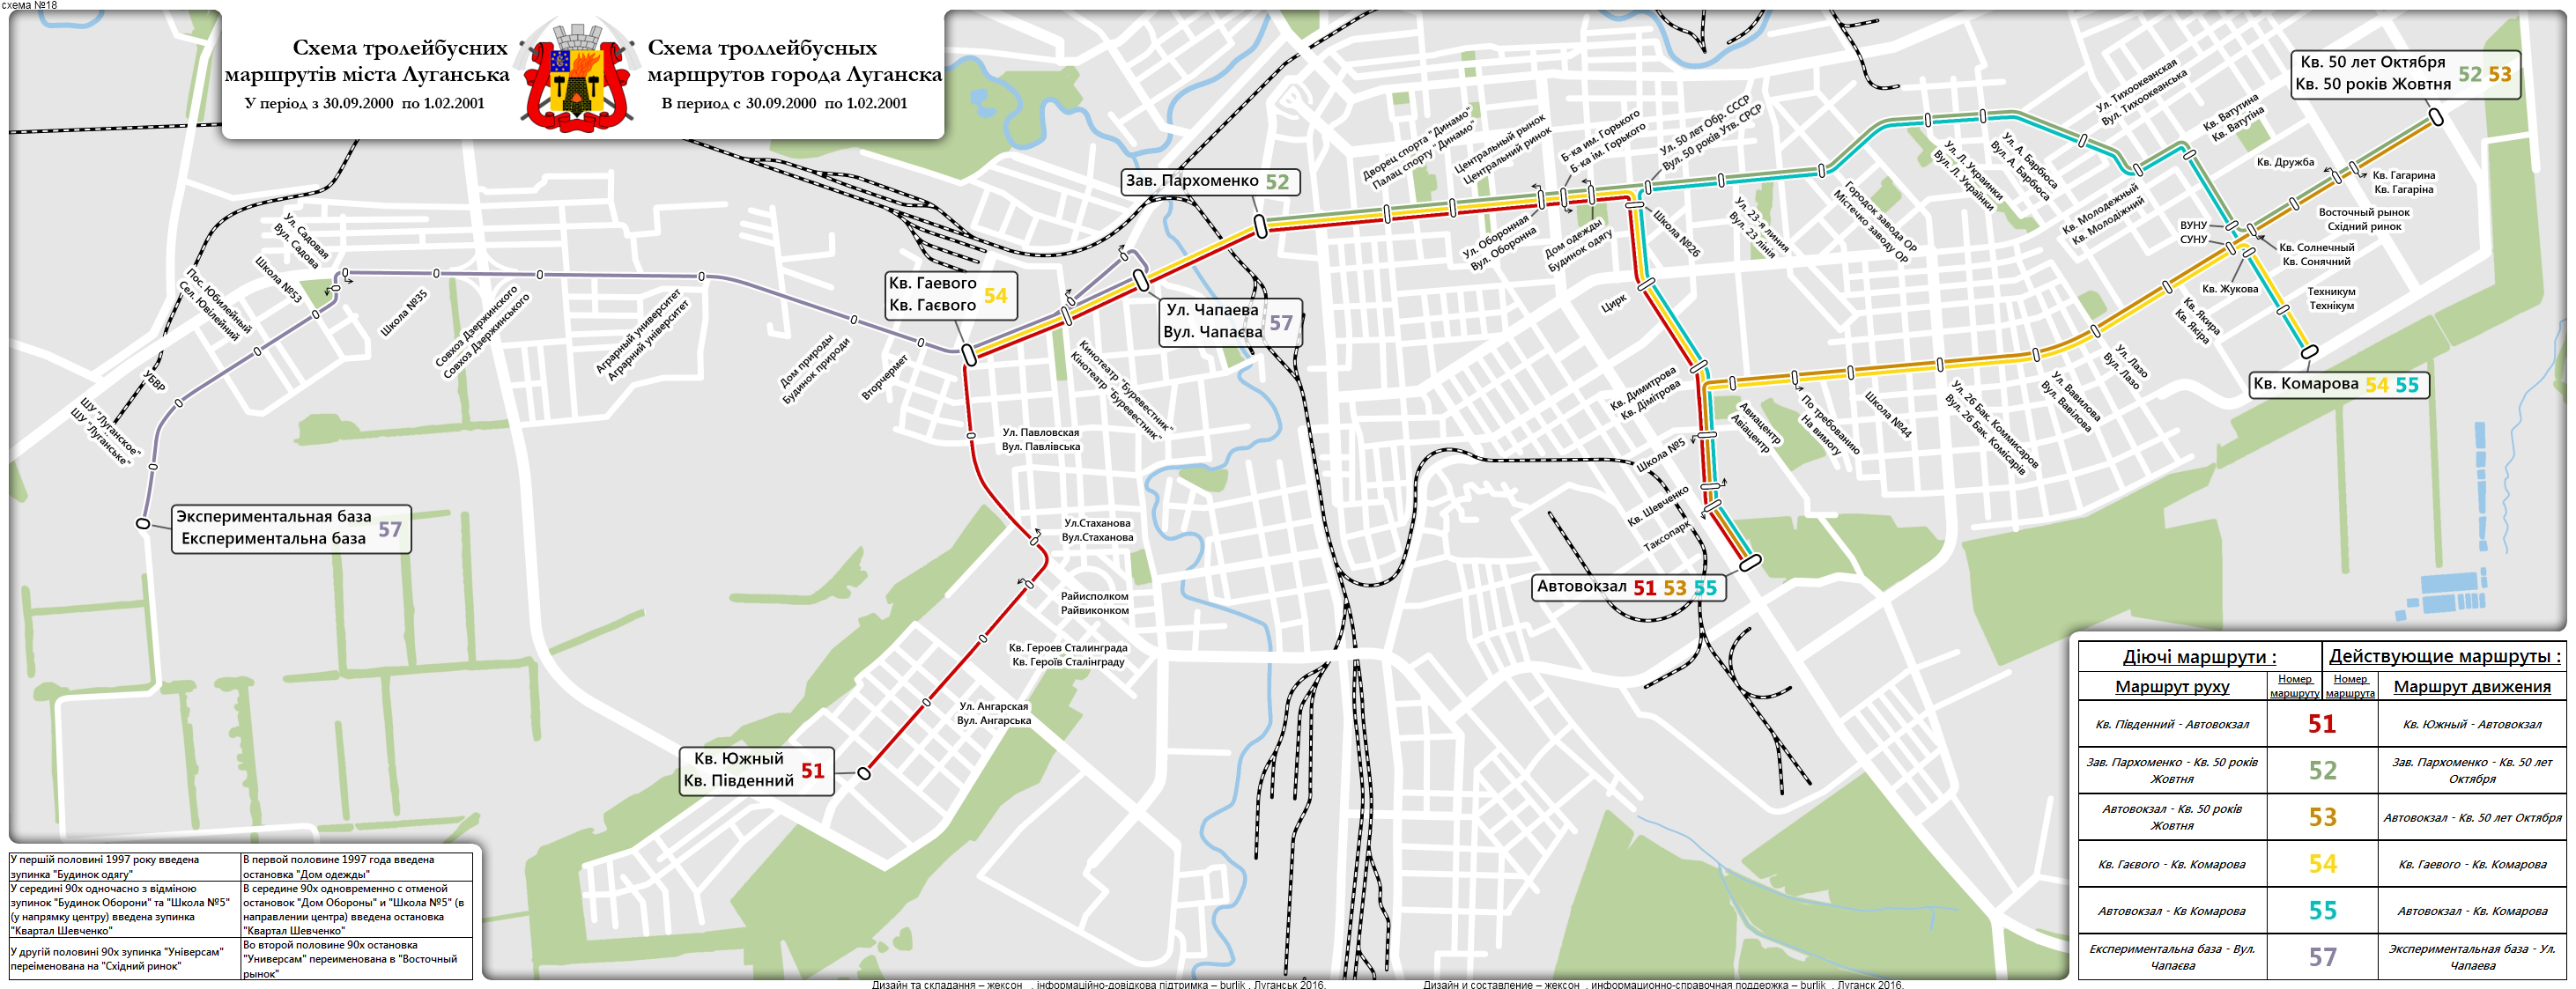 Луганськ — Исторические схемы троллейбусных маршрутов